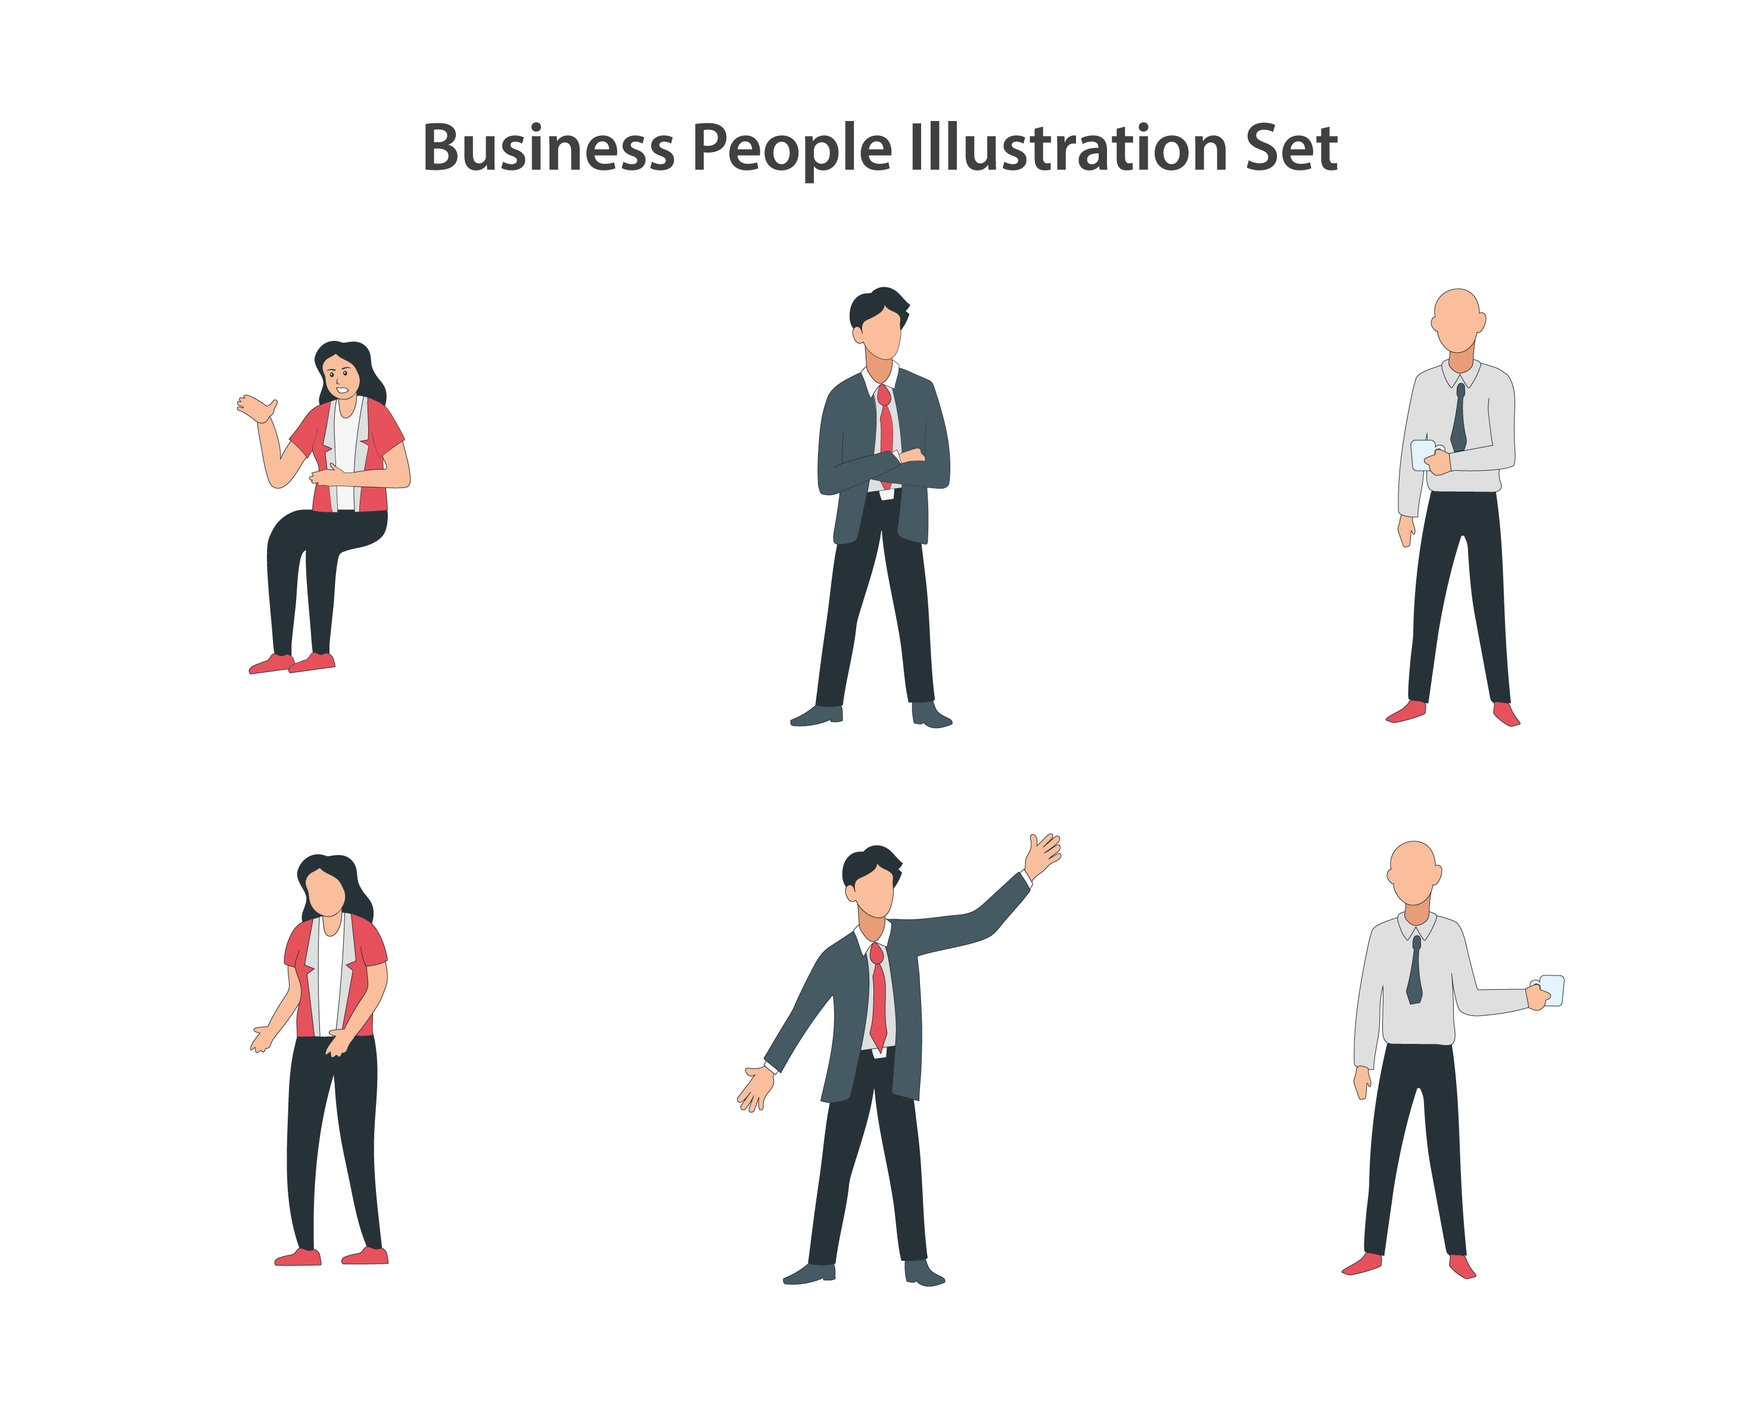 Business People Story Set in Illustrator, EPS, JPG, PNG, SVG - Download ...